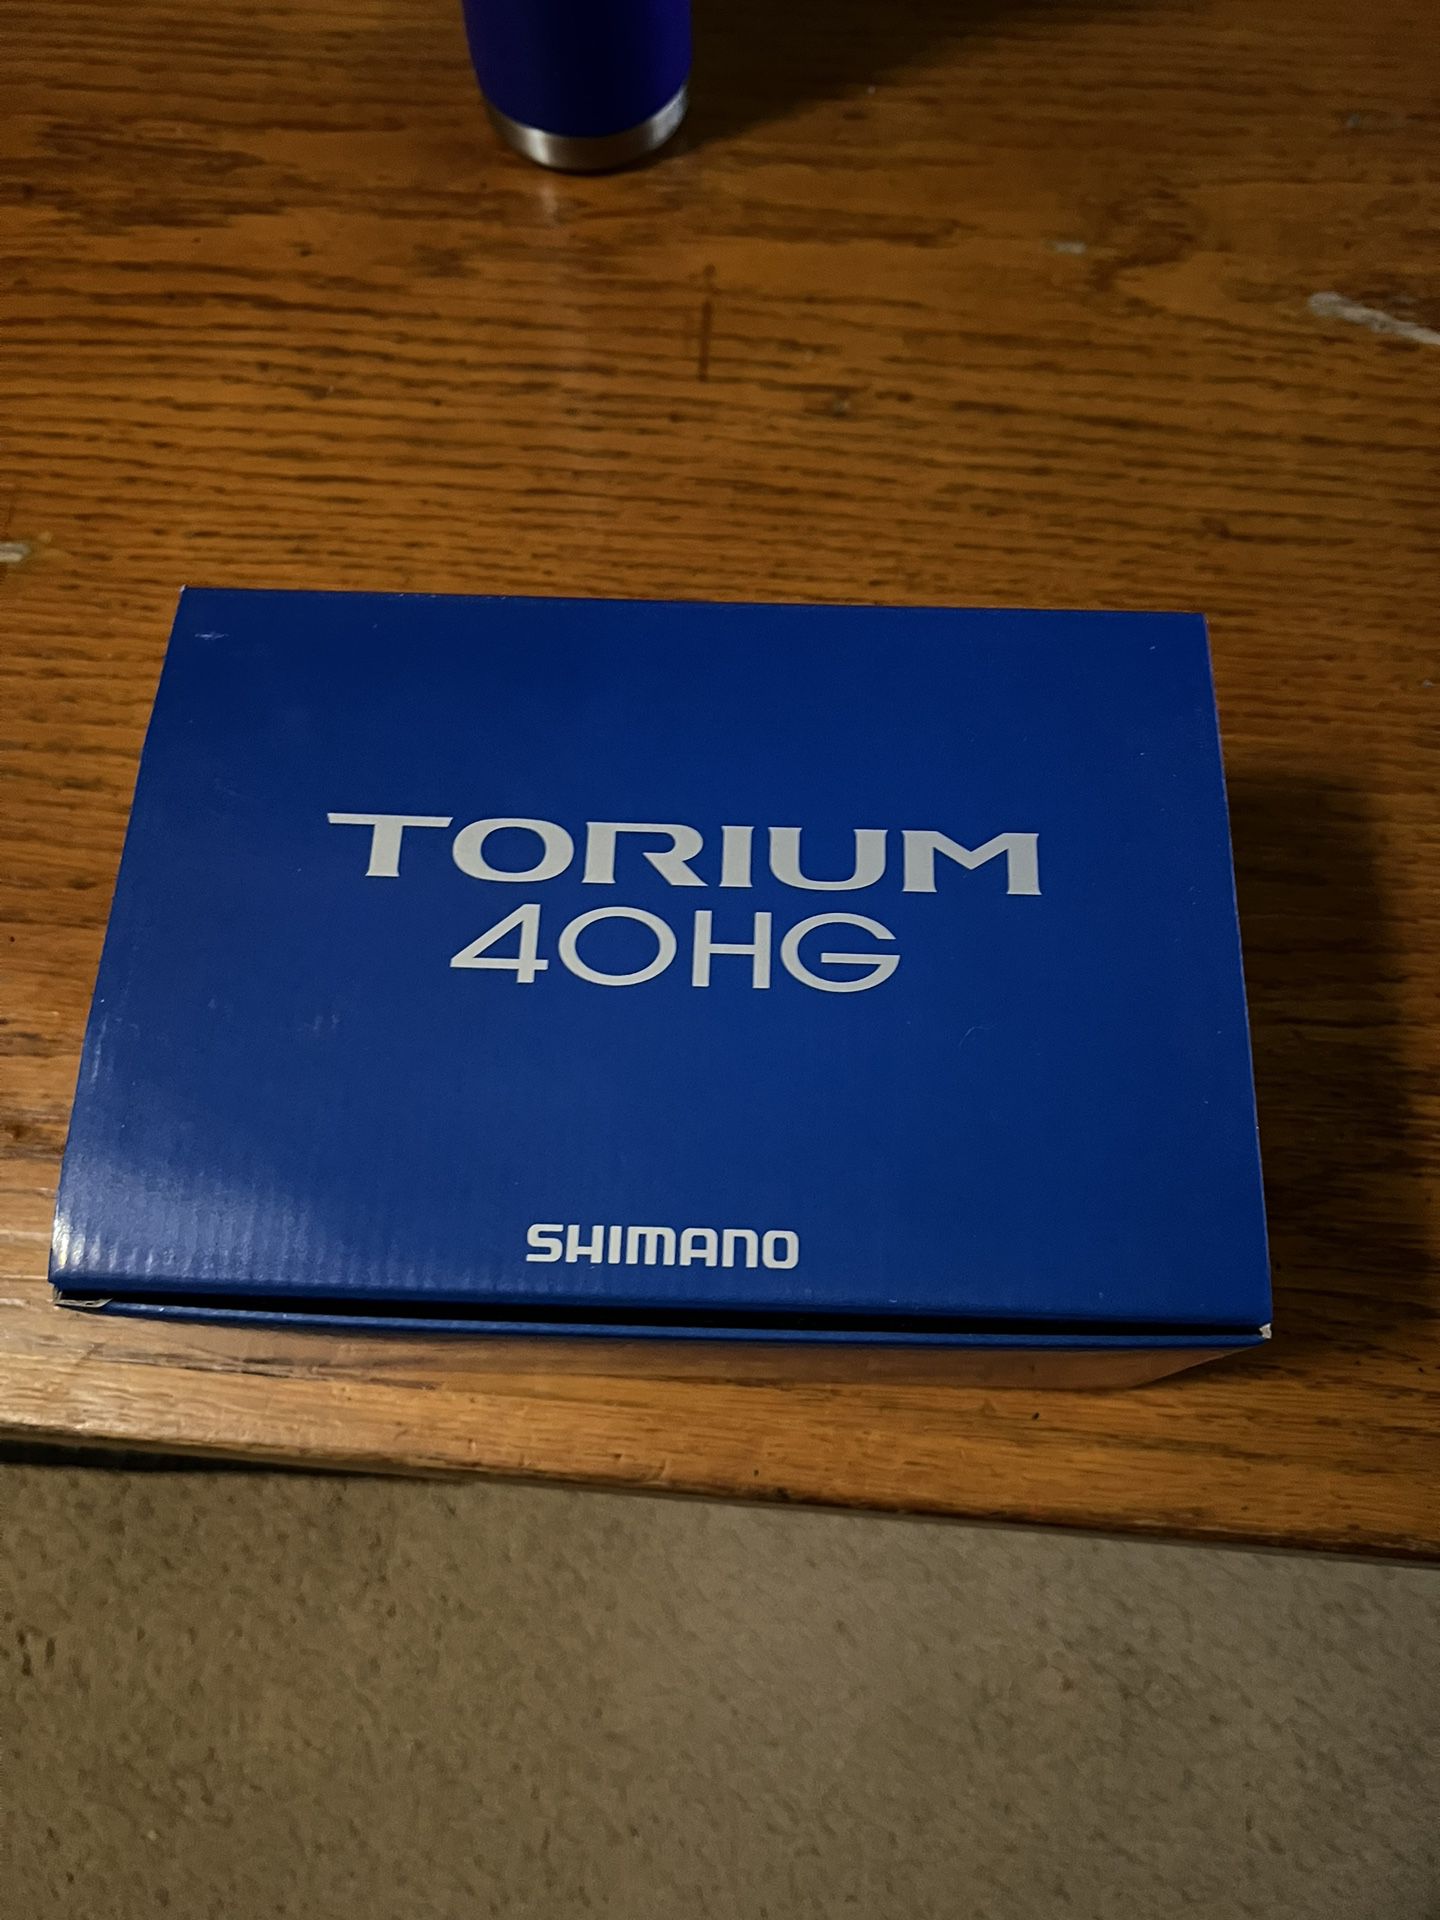 Torium 40hg